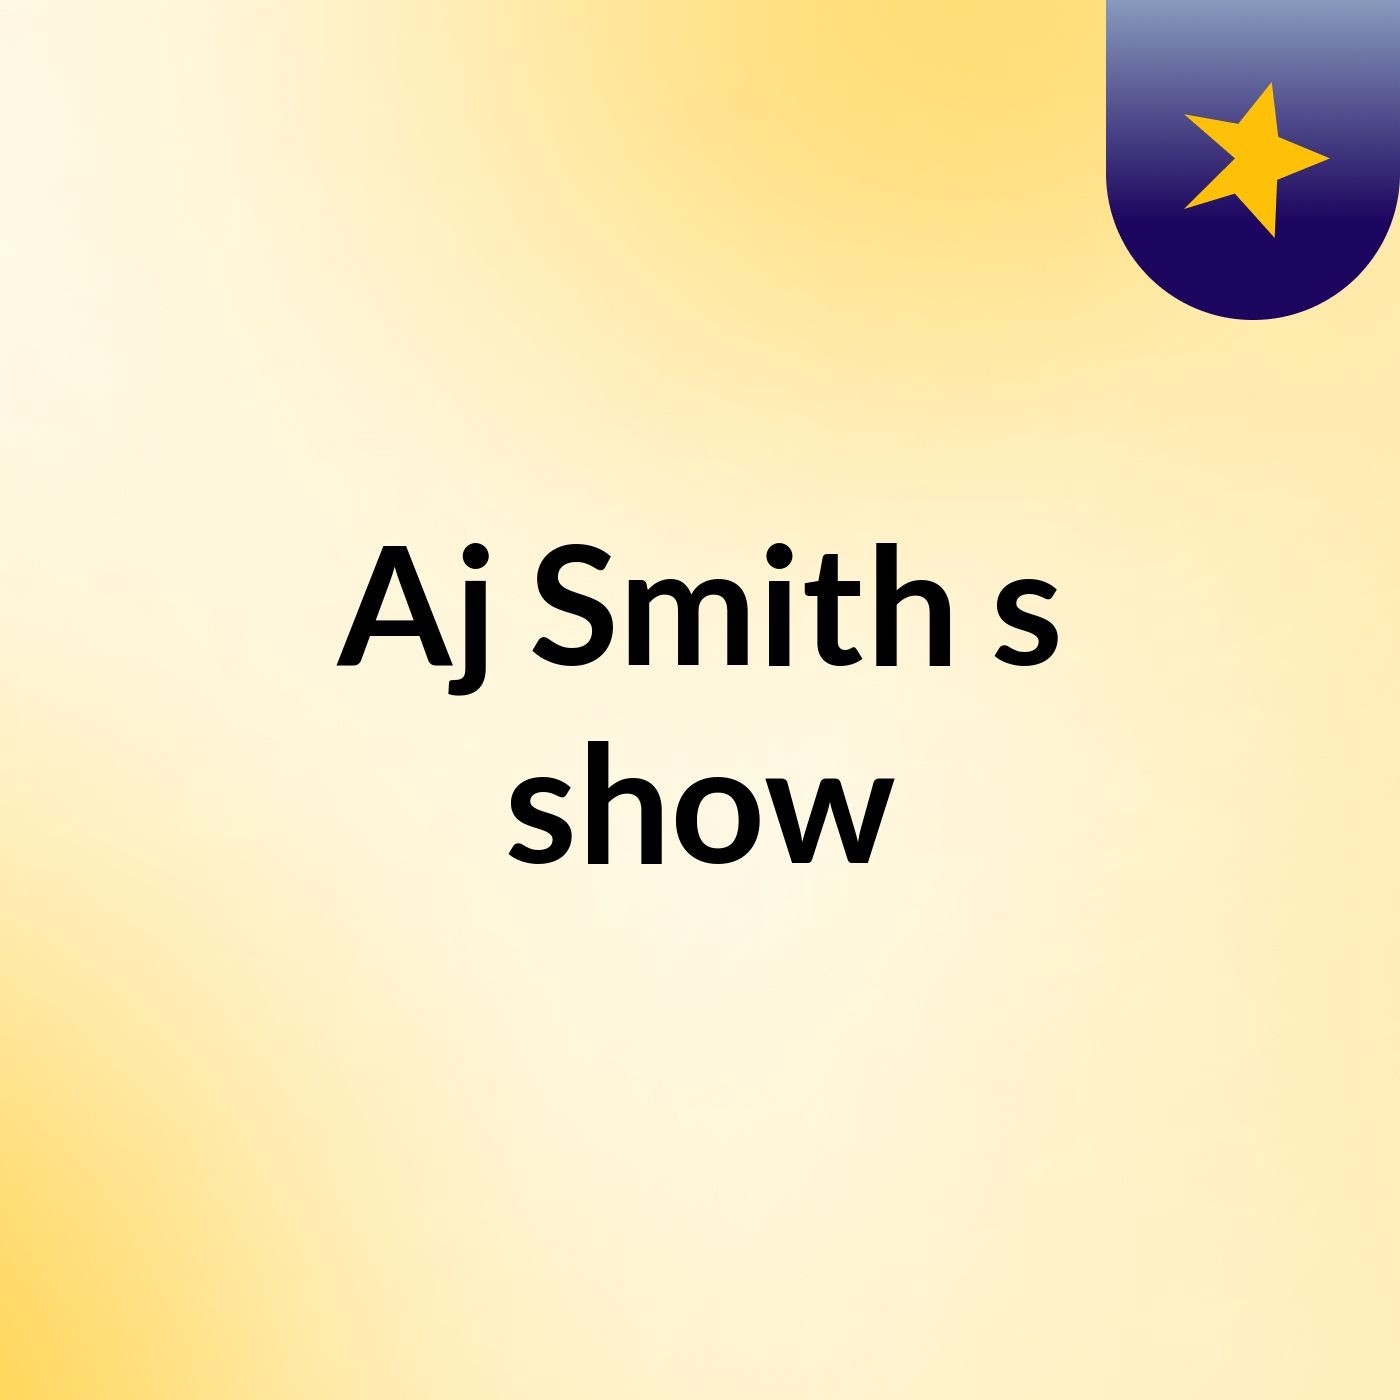 Episode 14 - Aj Smith's show